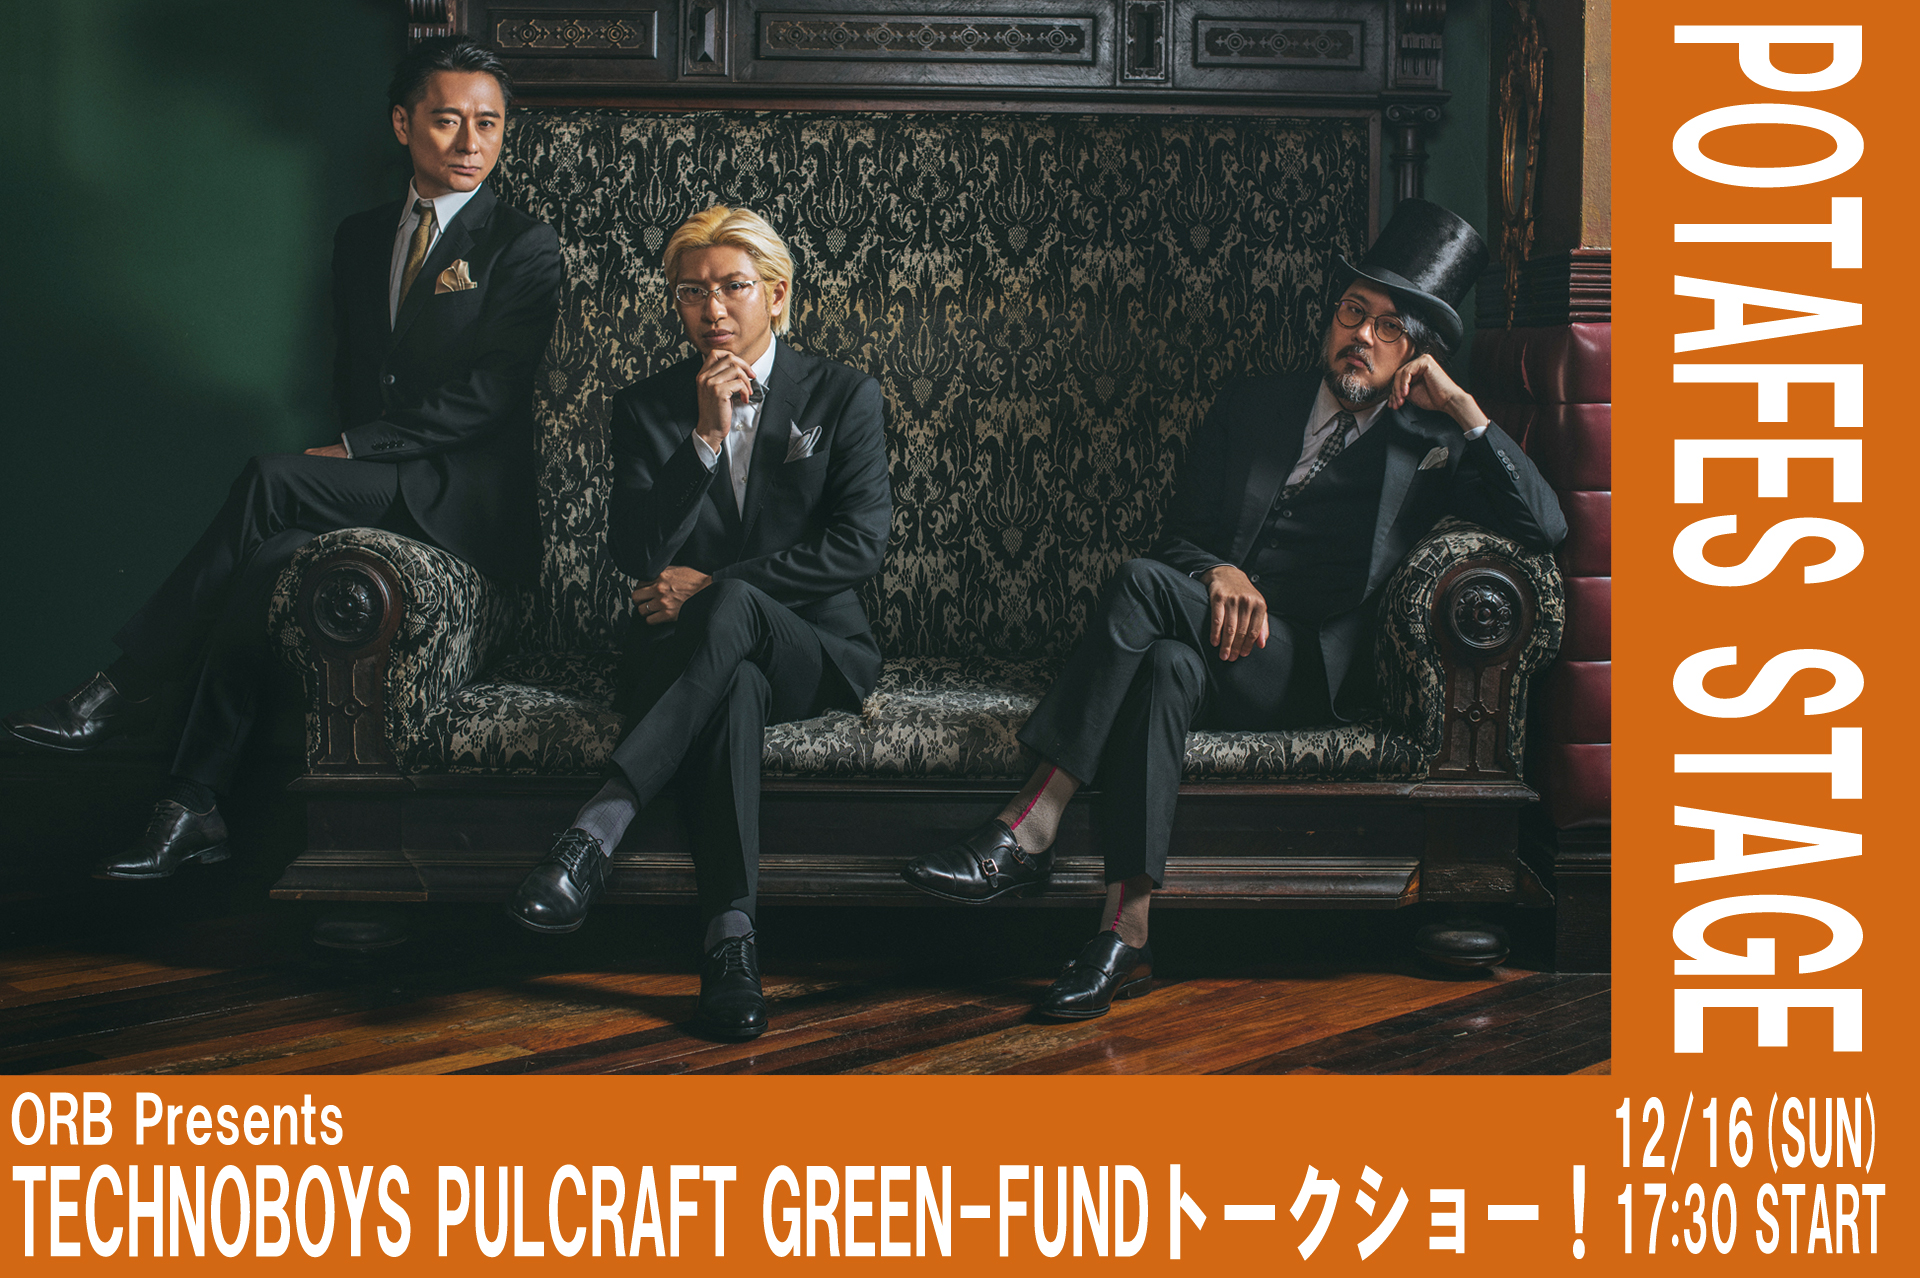 【ステージ情報】ORB Presents TECHNOBOYS PULCRAFT GREEN-FUNDトークショー！